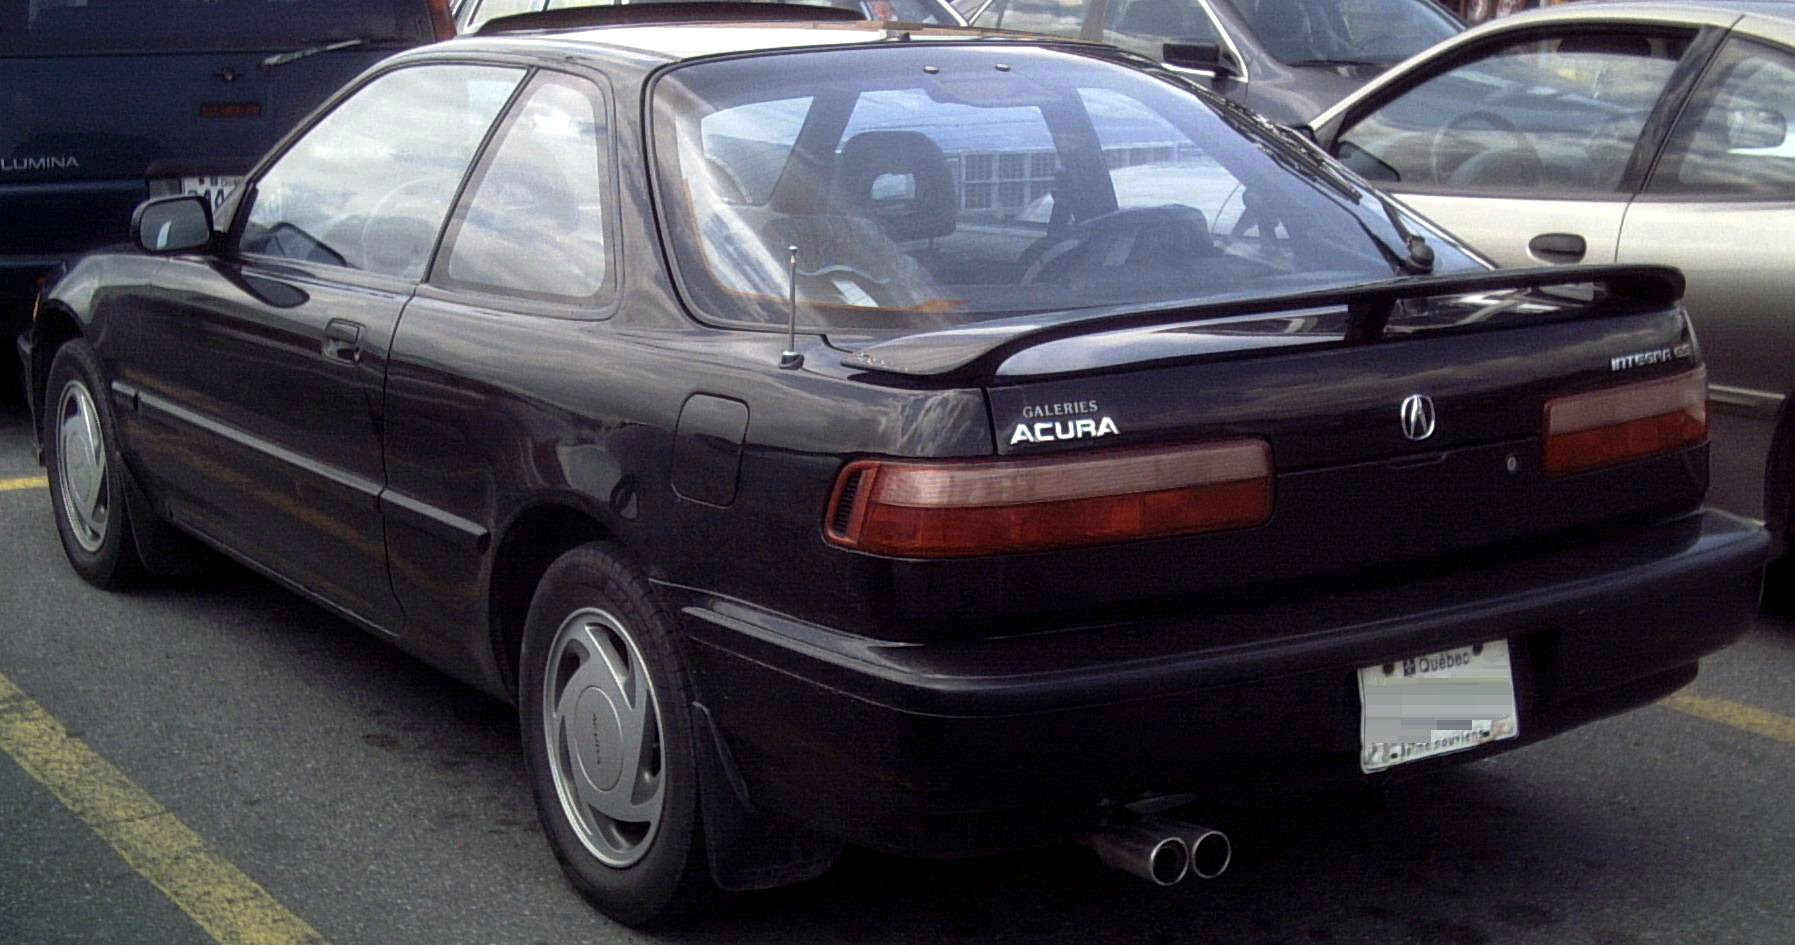 Acura_Integra_1991-93.jpg